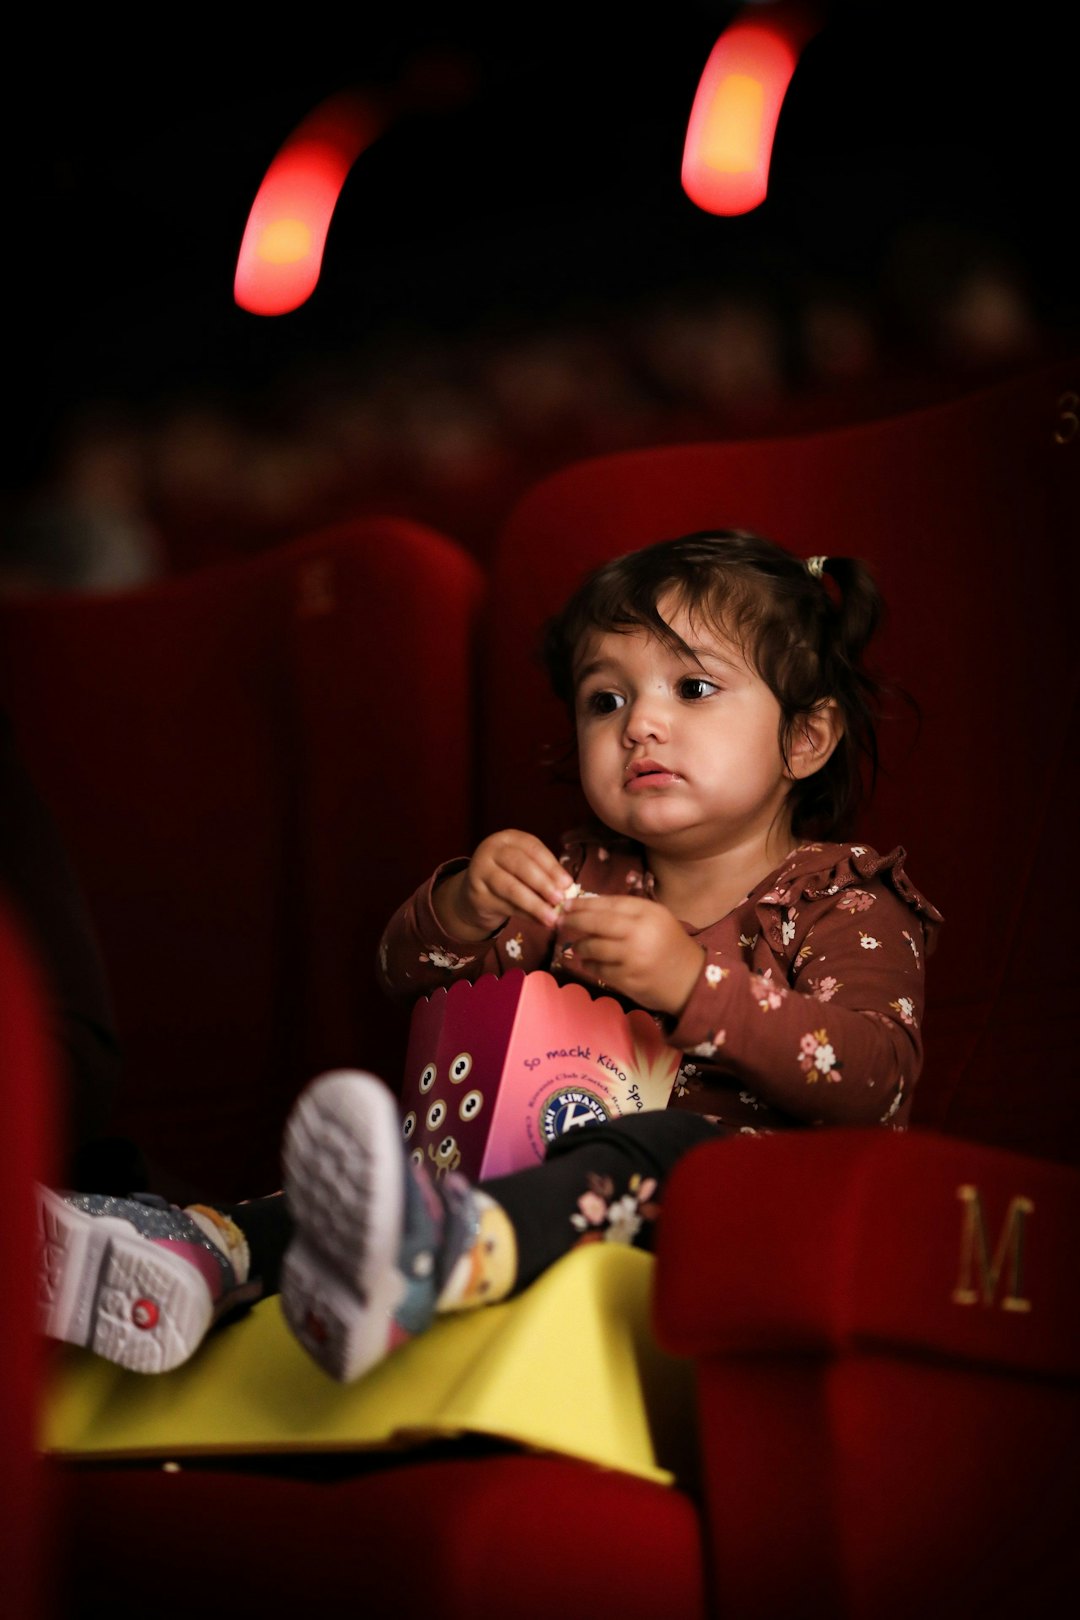 Ein kleines Mädchen auf einem Kinosessel, das Popcorn isst.